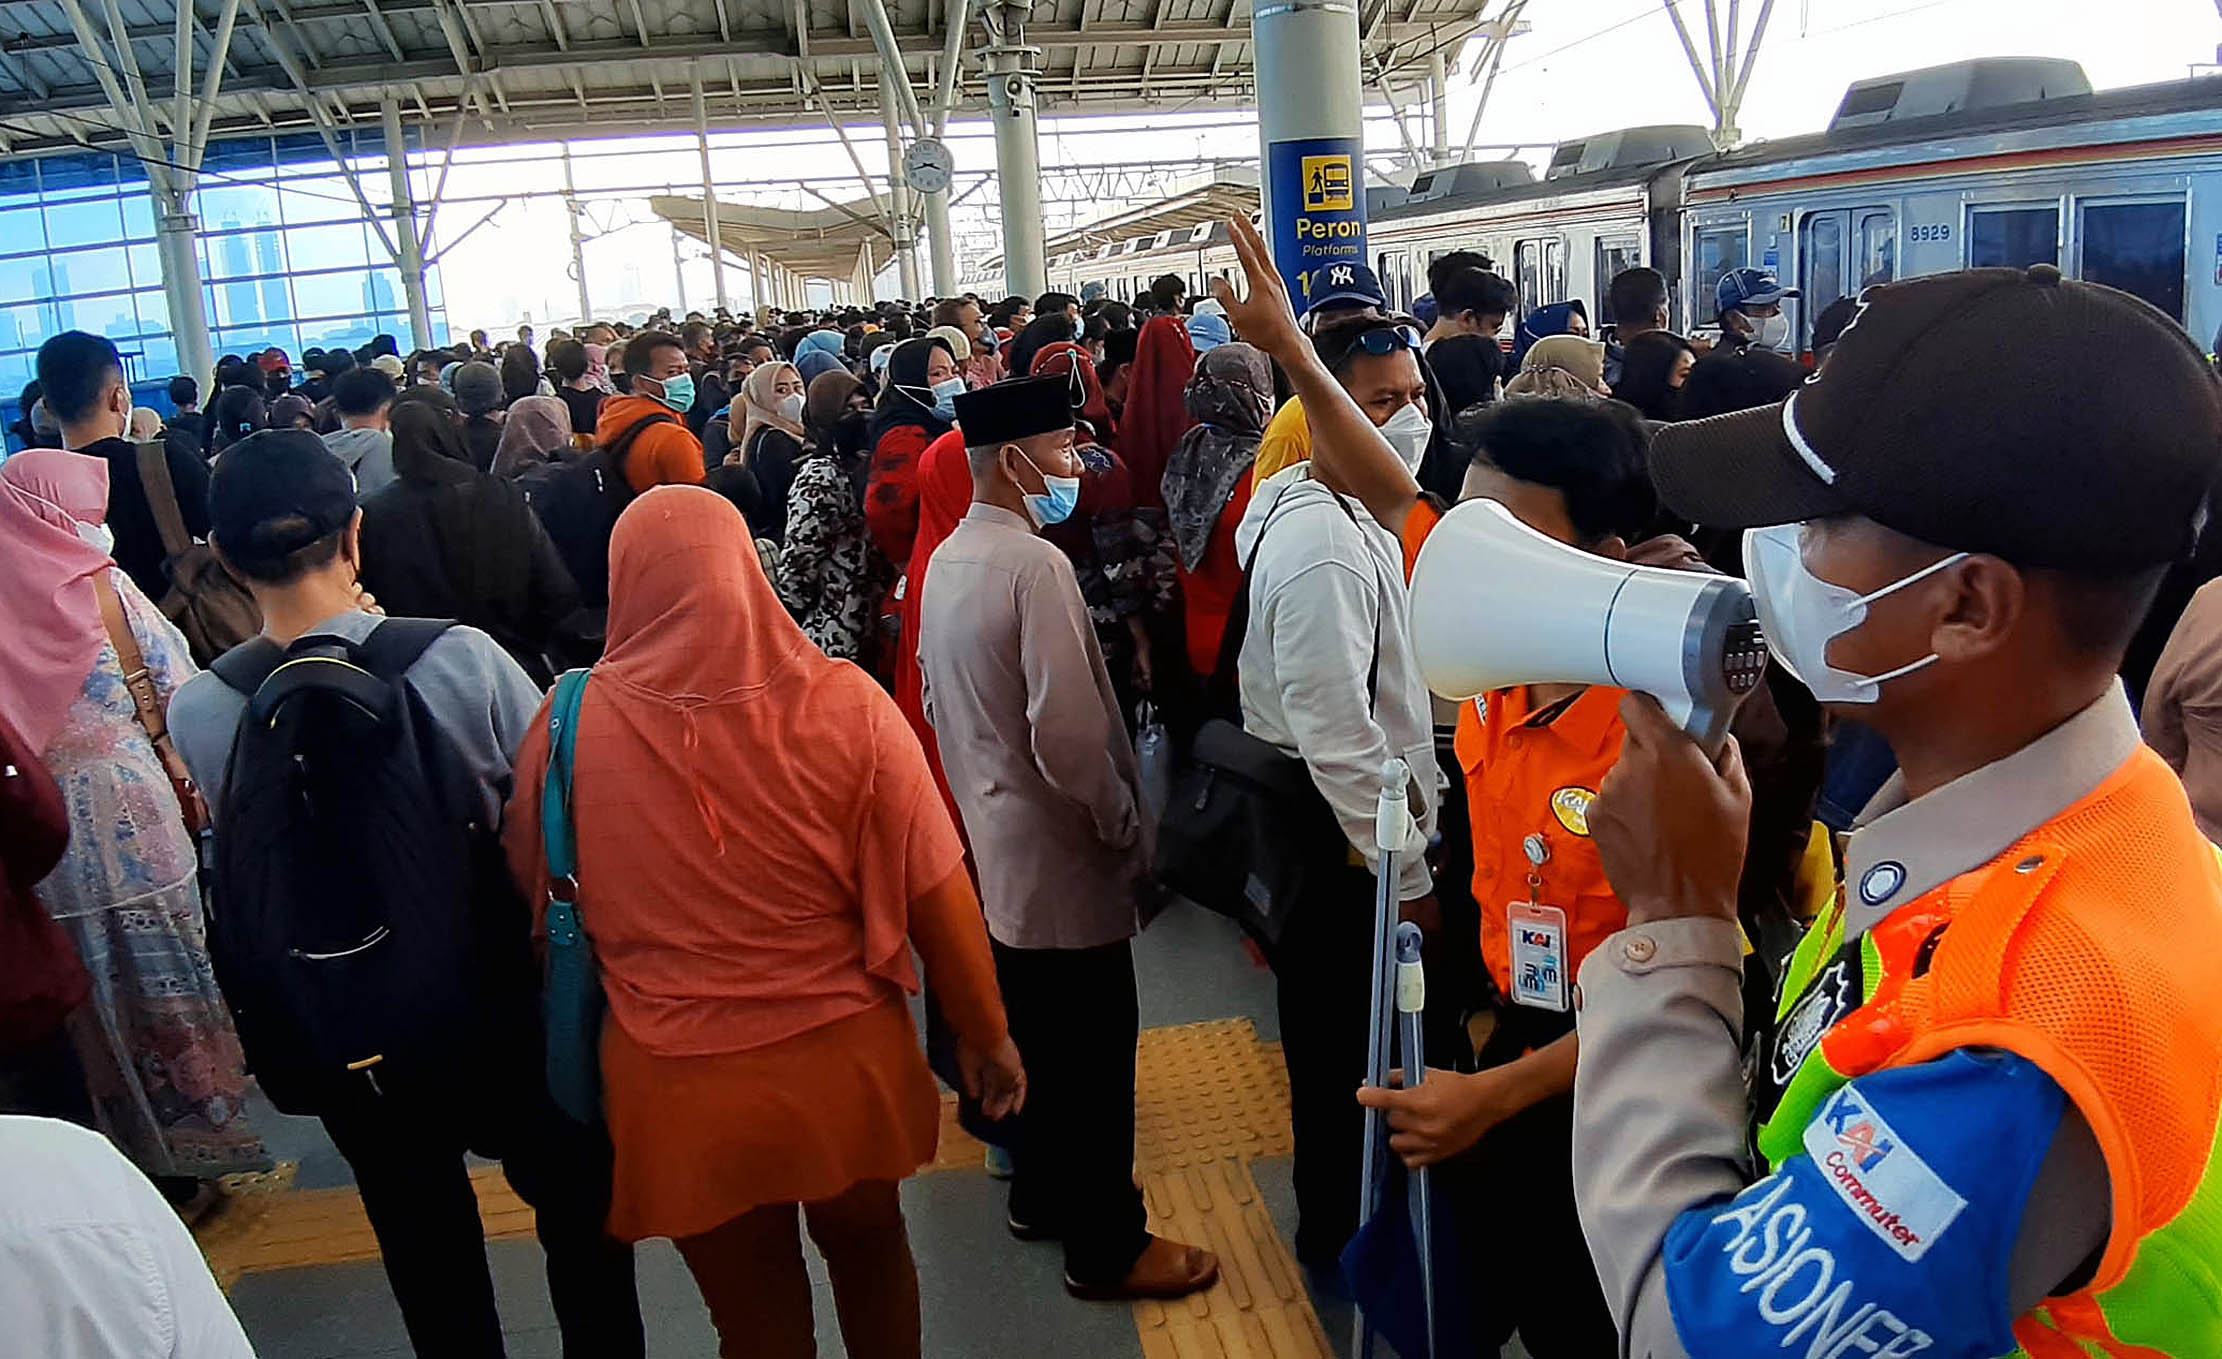 Tumpukan penumpang tujuan Bogor di Stasiun Manggarai akibat penghapusan rute commuter line Tanah Abang - Bogor sehingga penumpang transit sangat padat di stasiun tersebut, Minggu 29 Mei 2022. Foto : Panji Asmoro/TrenAsia